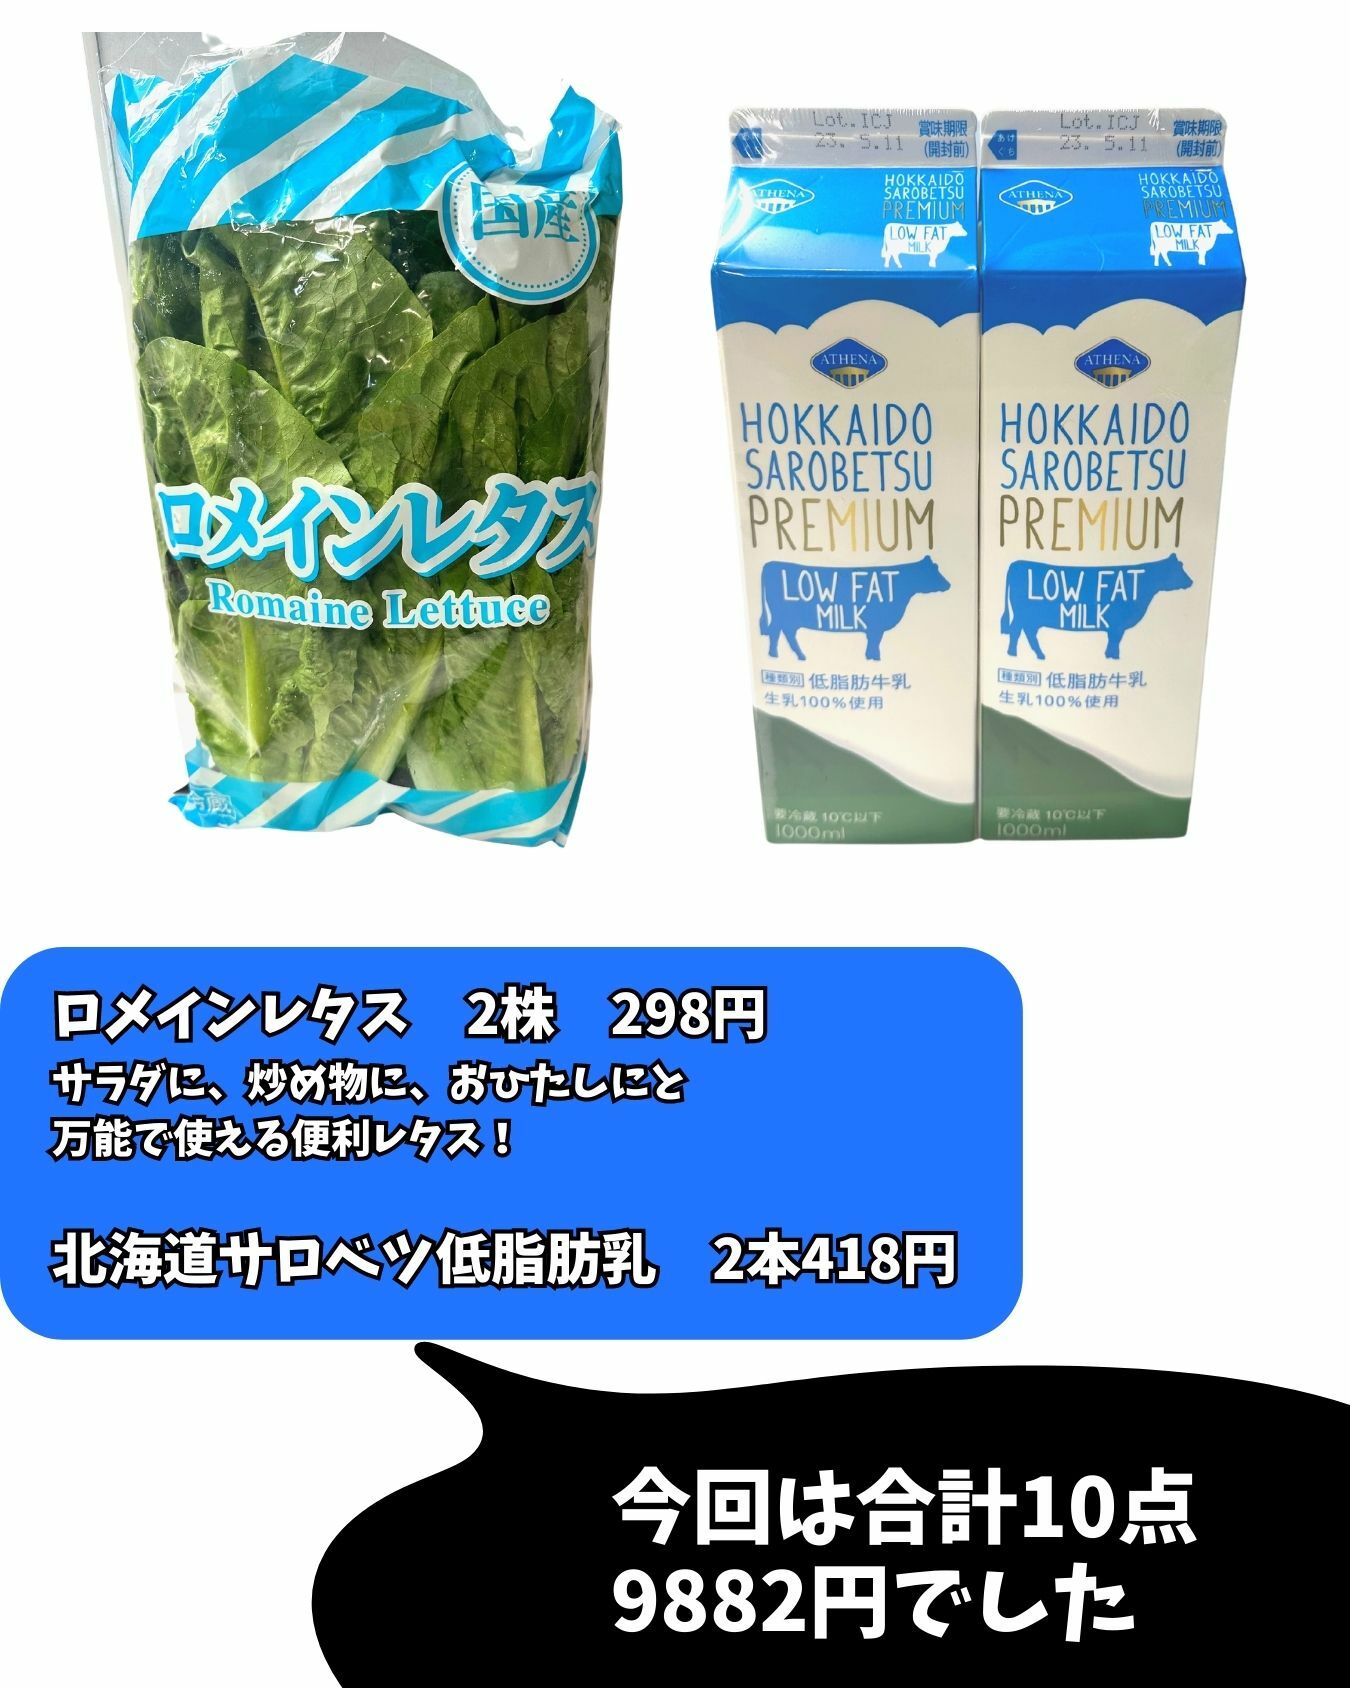 【コストコ】ロメインレタス/北海道サロベツ低脂肪乳